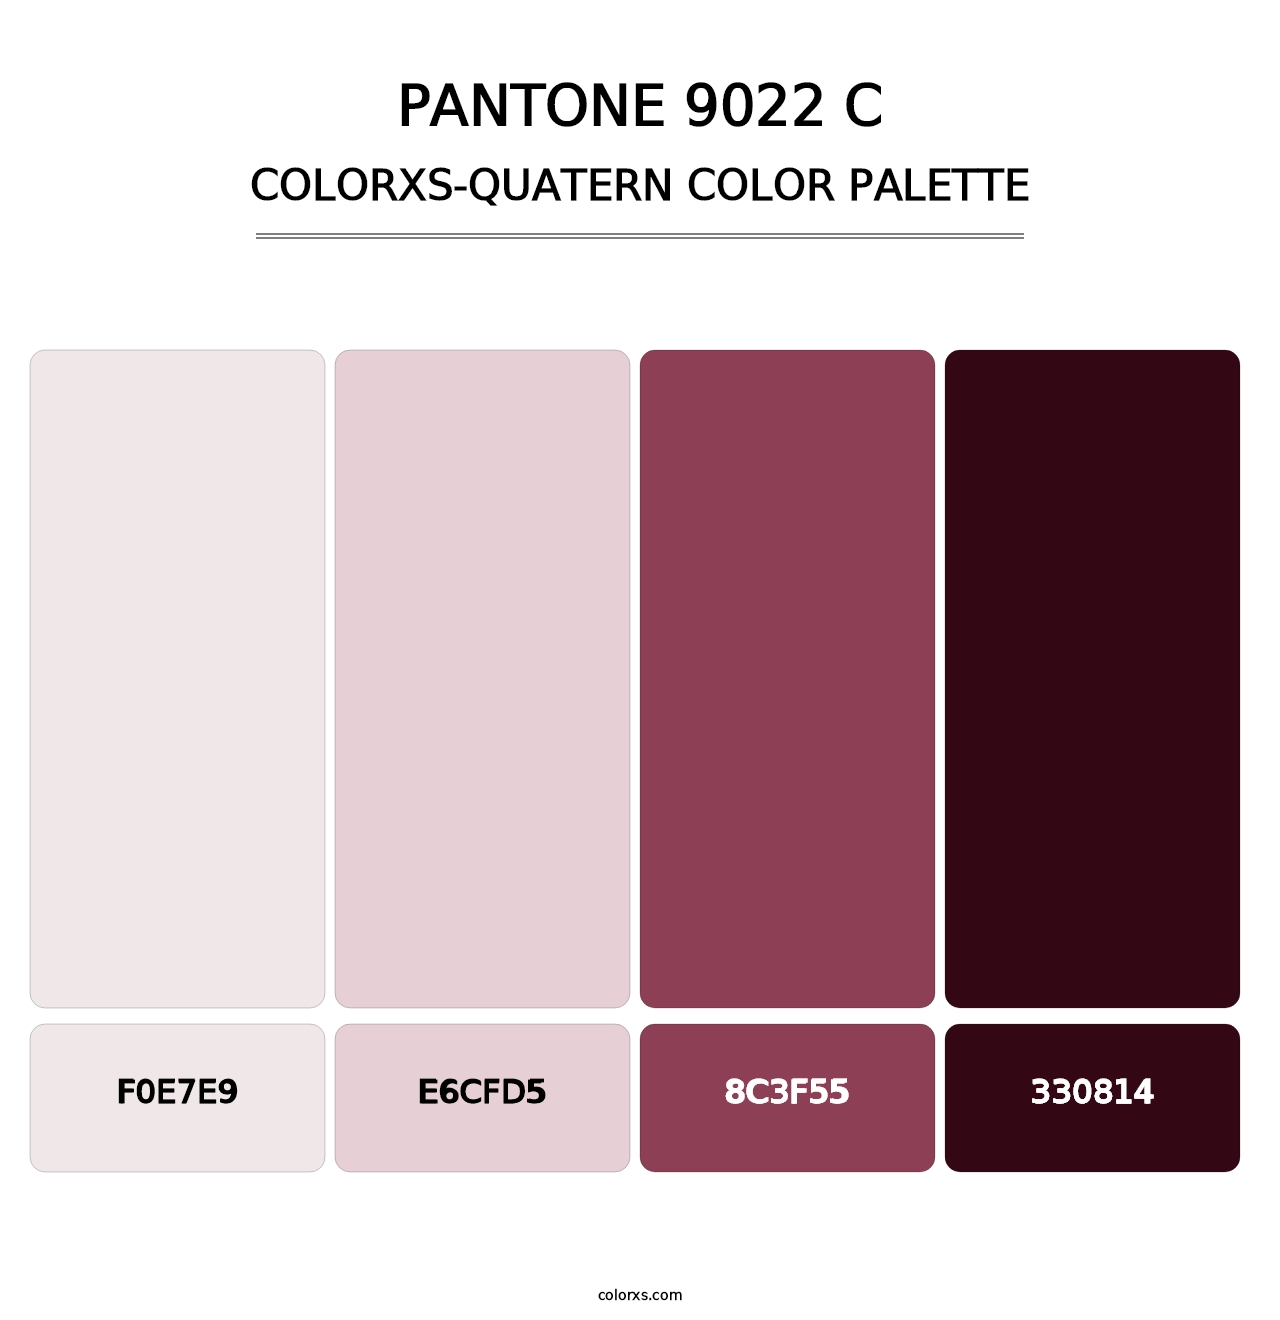 PANTONE 9022 C - Colorxs Quatern Palette